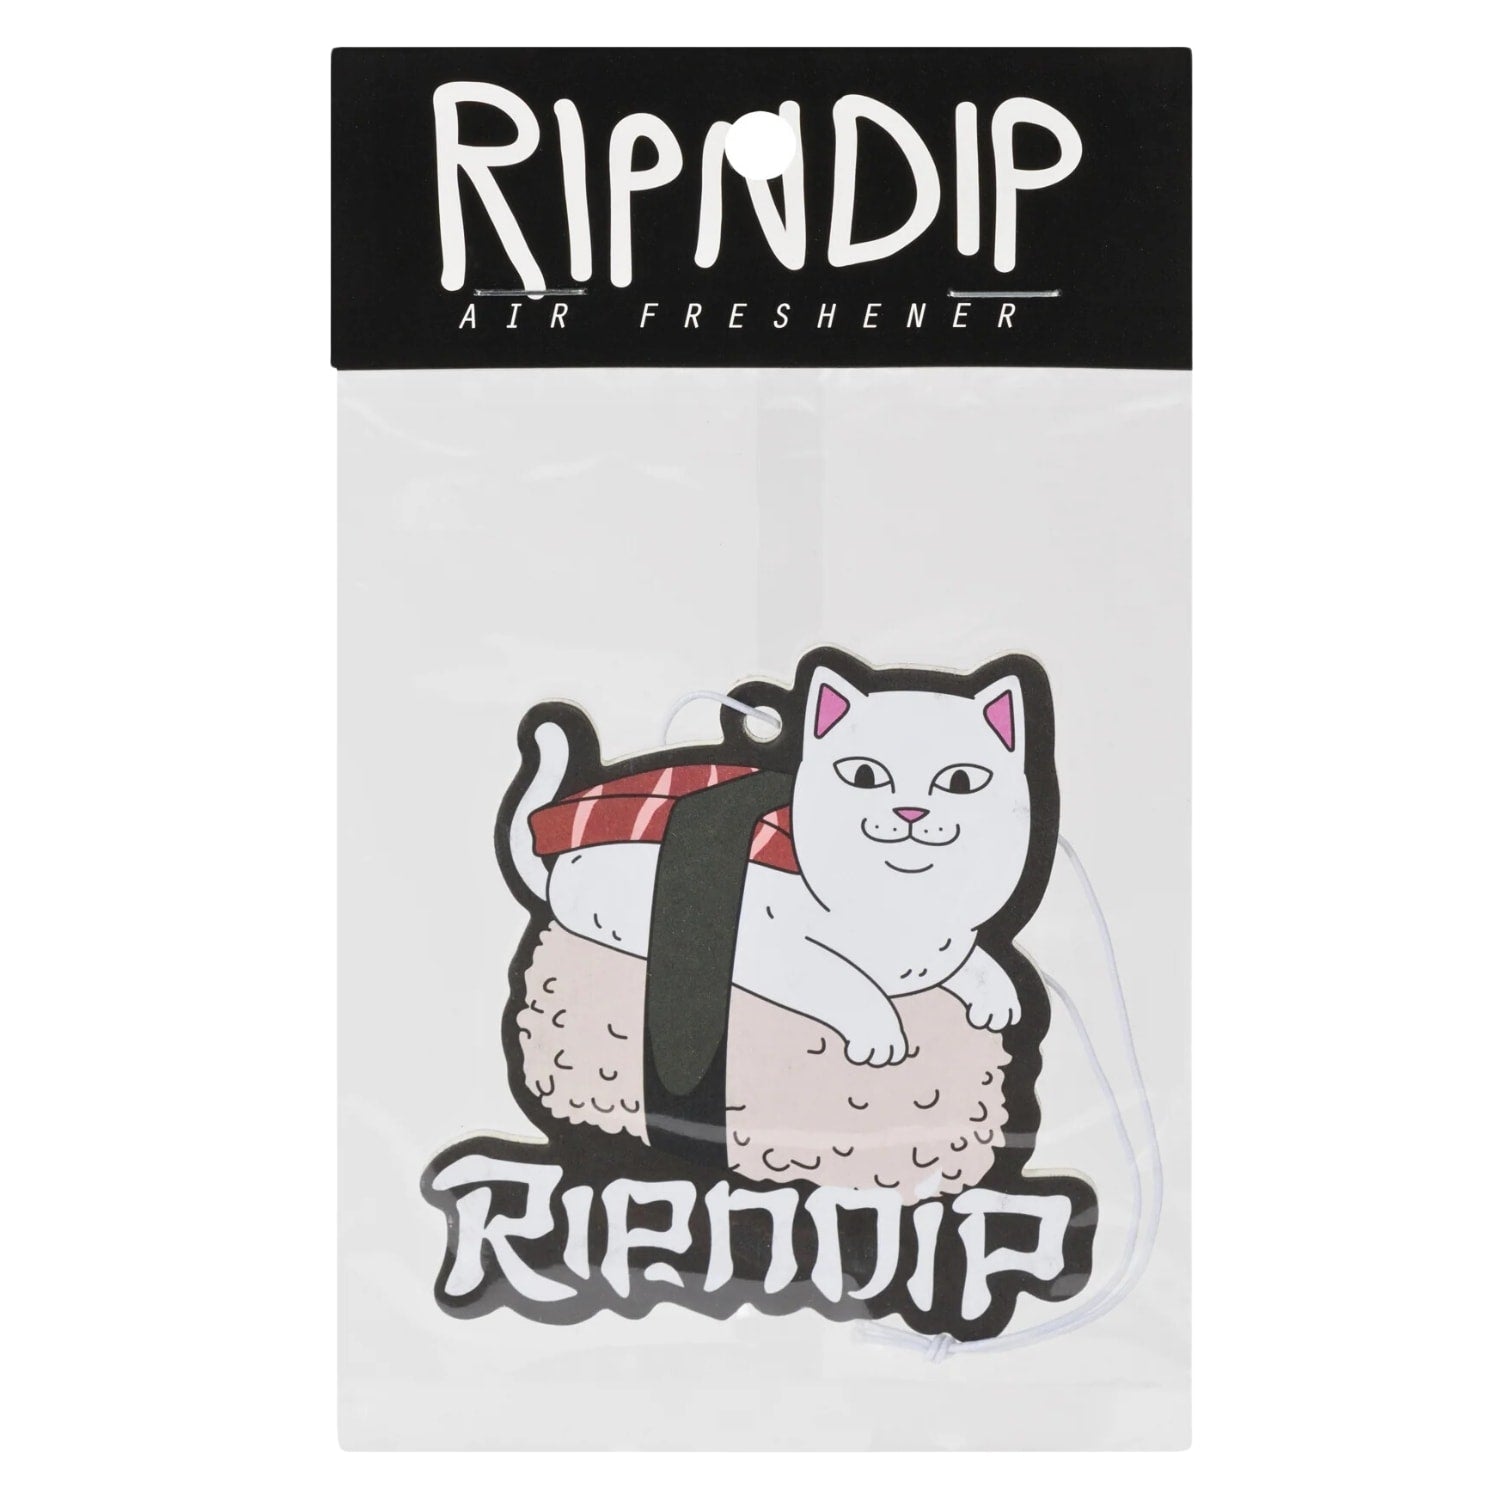 Ripndip Sushi Nerm Air Freshener - Multi - Car Air Freshener by RIPNDIP